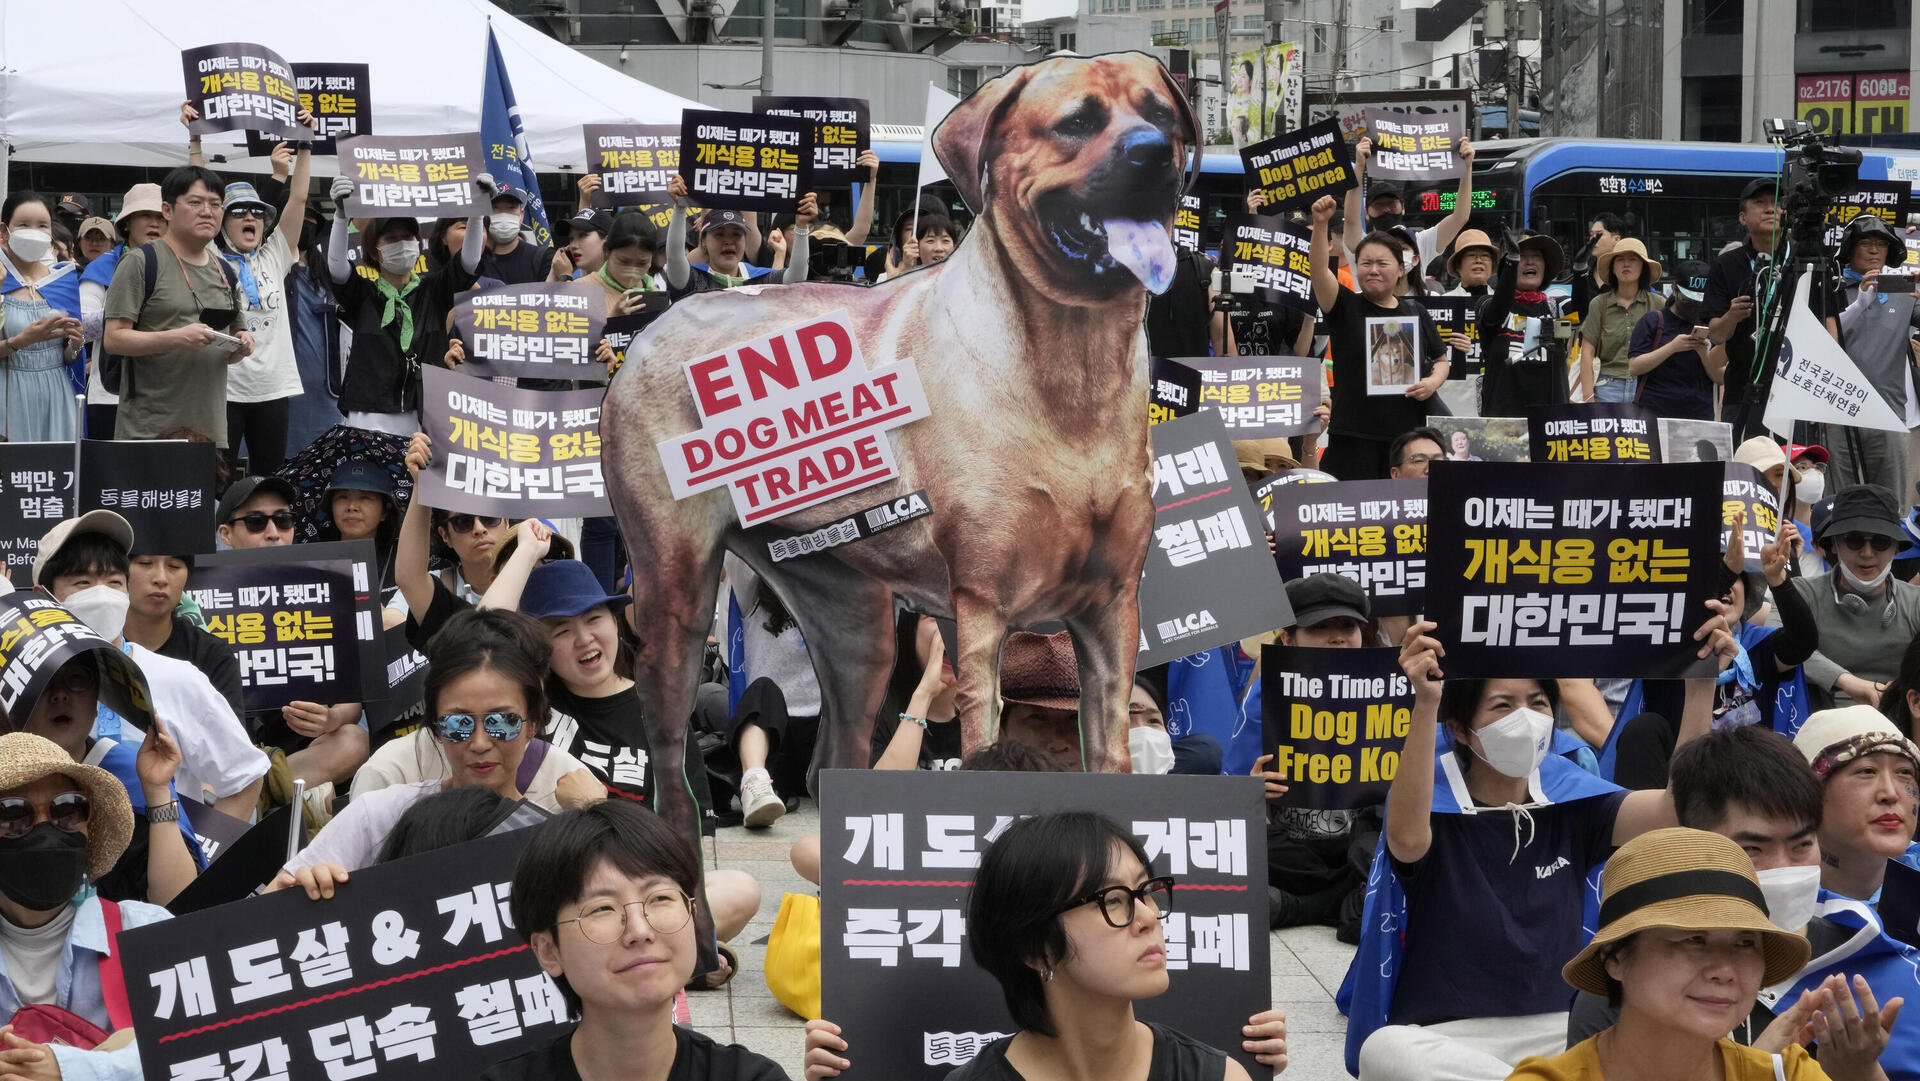 הפגנה נגד מכירת בשר כלבים דרום קוריאה